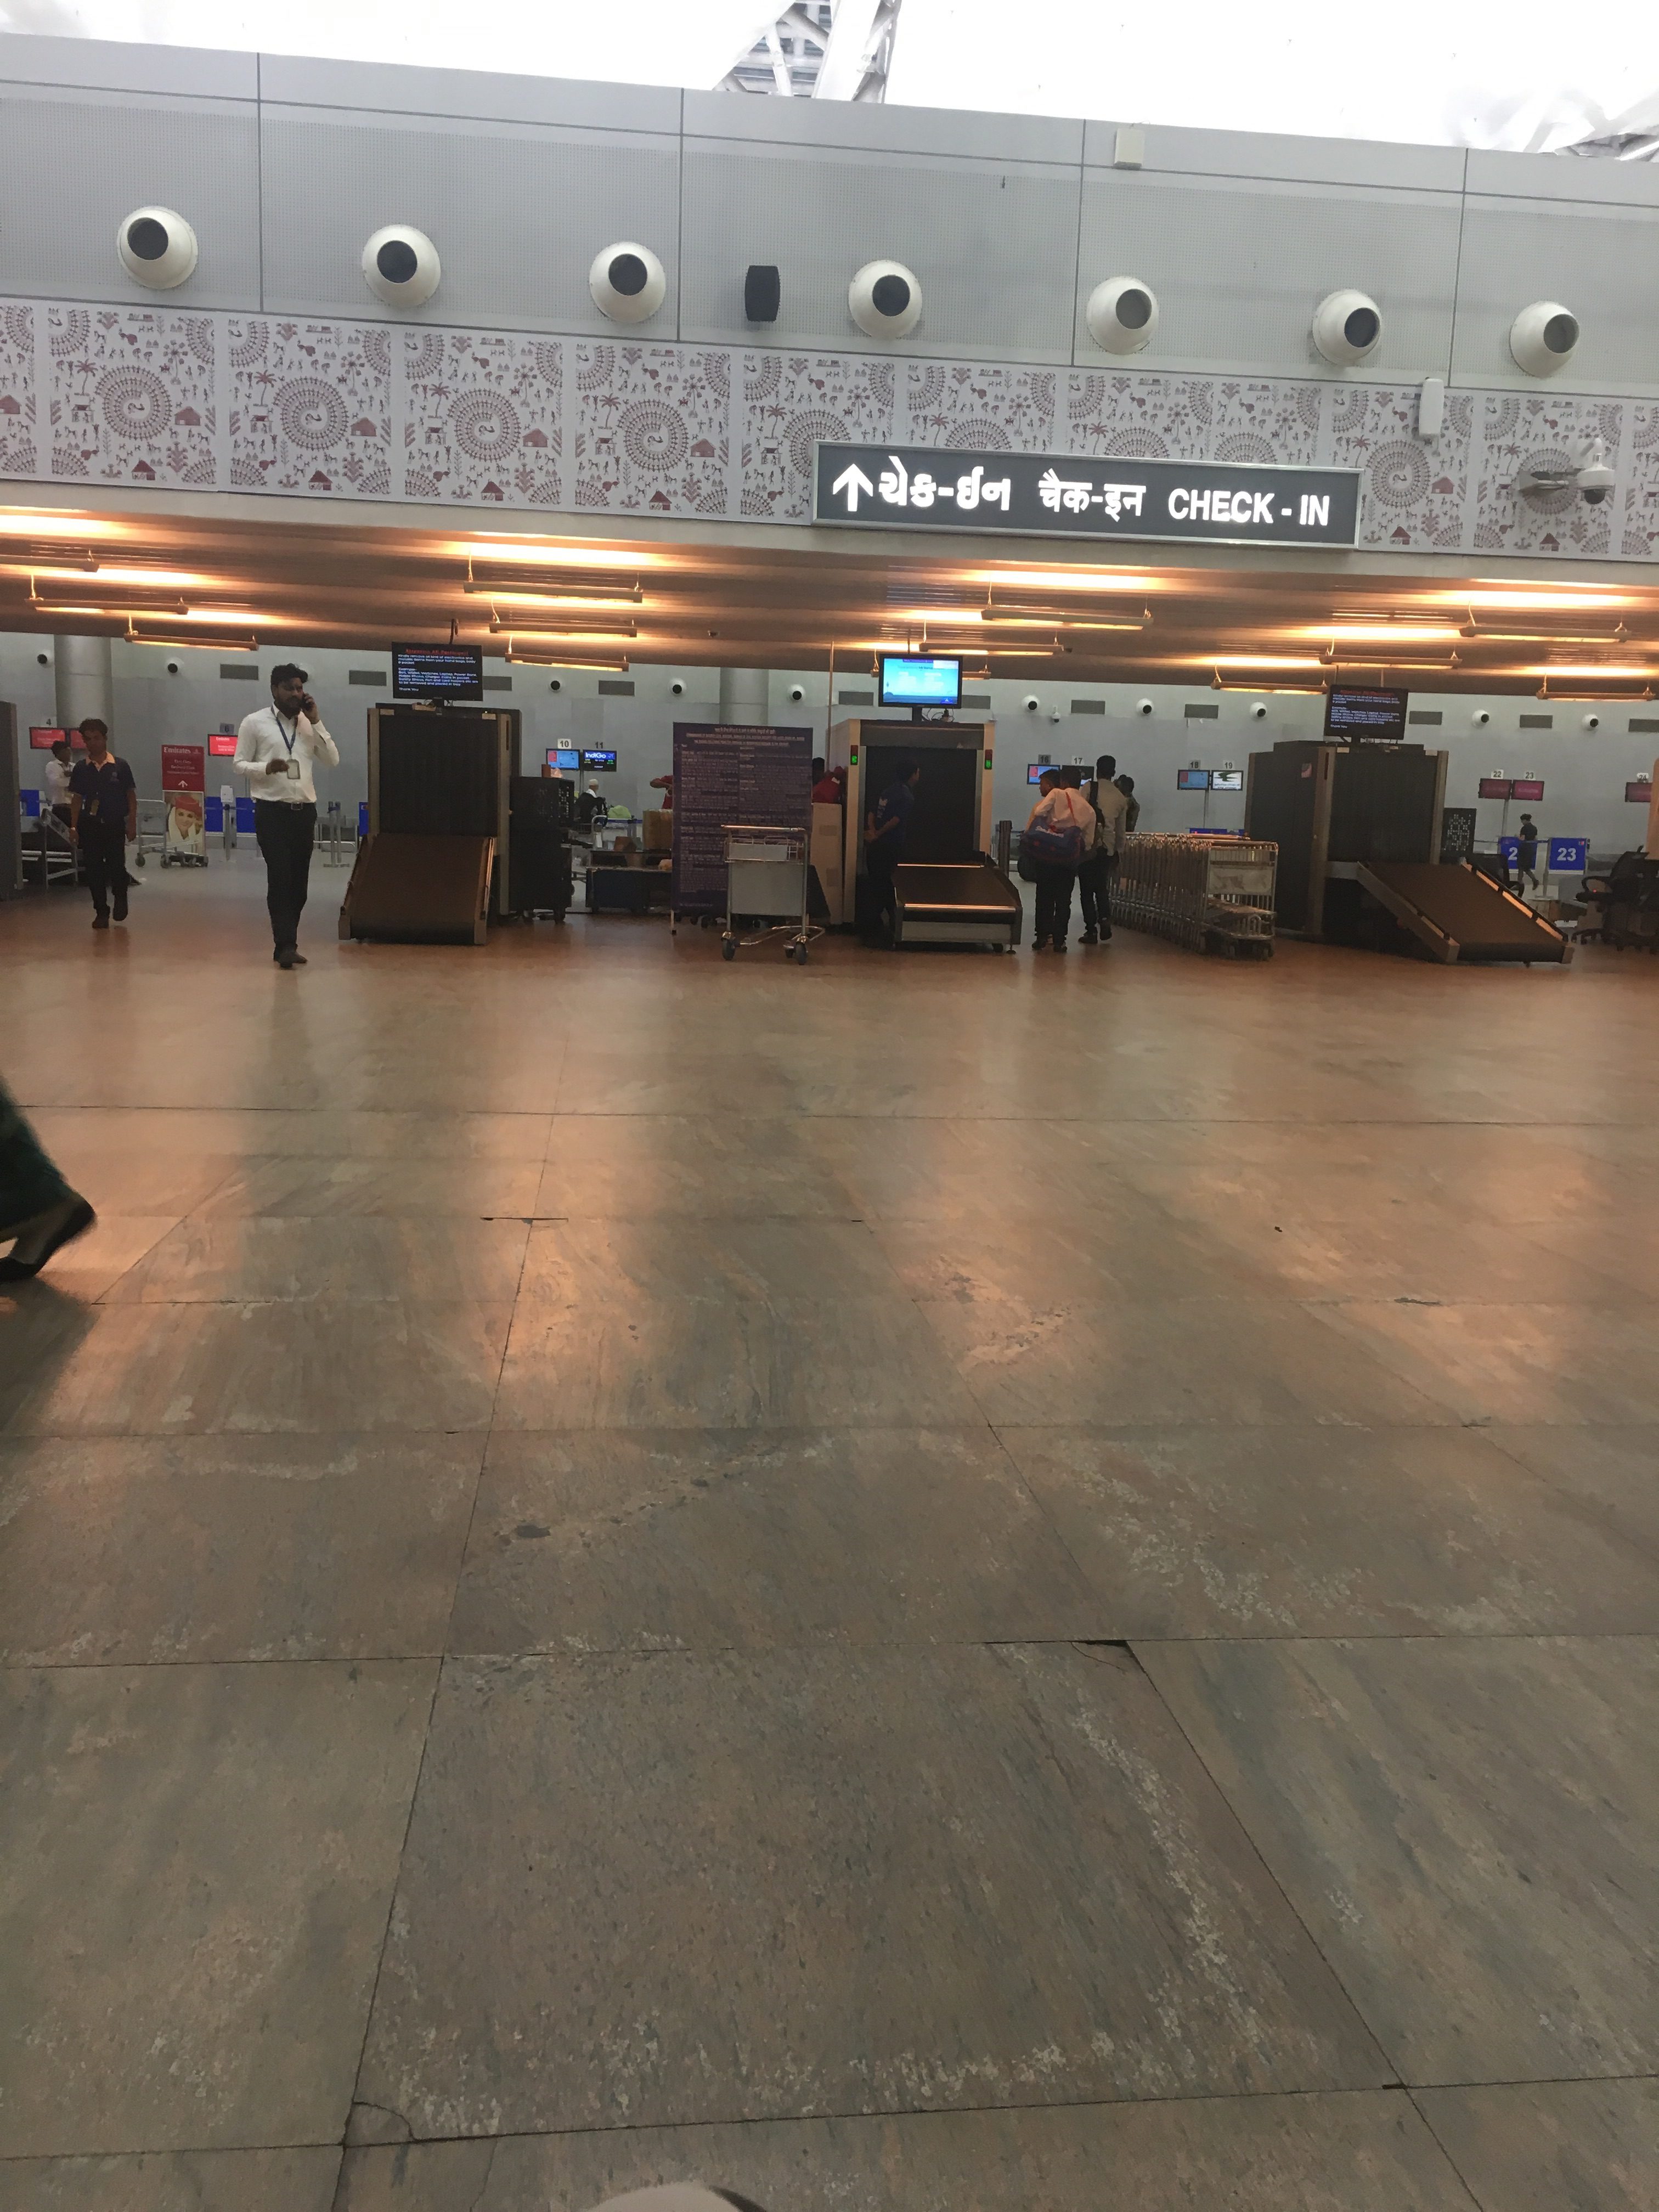 Ahmedabad Airport Customer Reviews - SKYTRAX